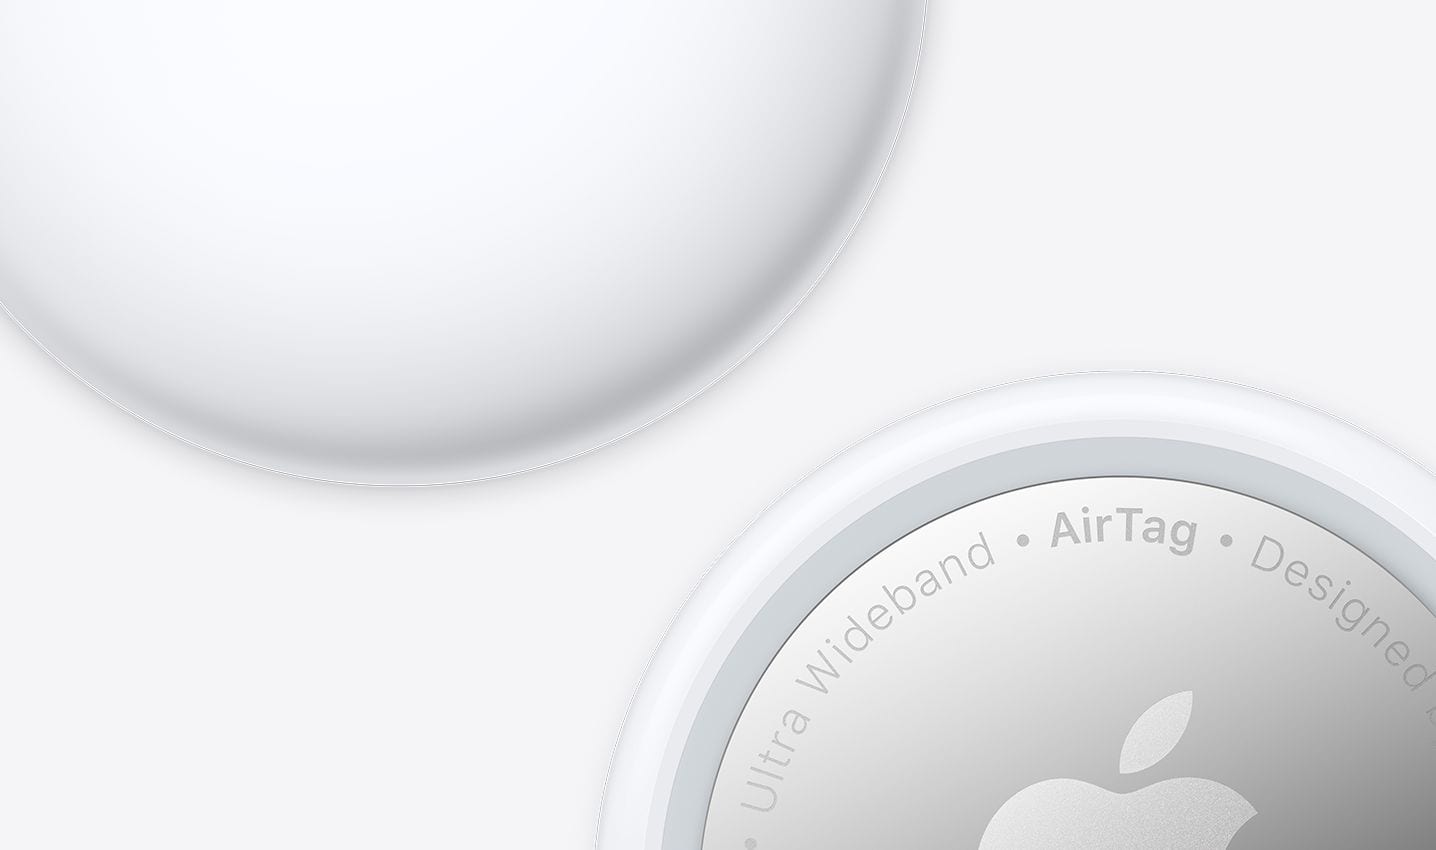 Apple desarrolla una App Android para sus AirTags